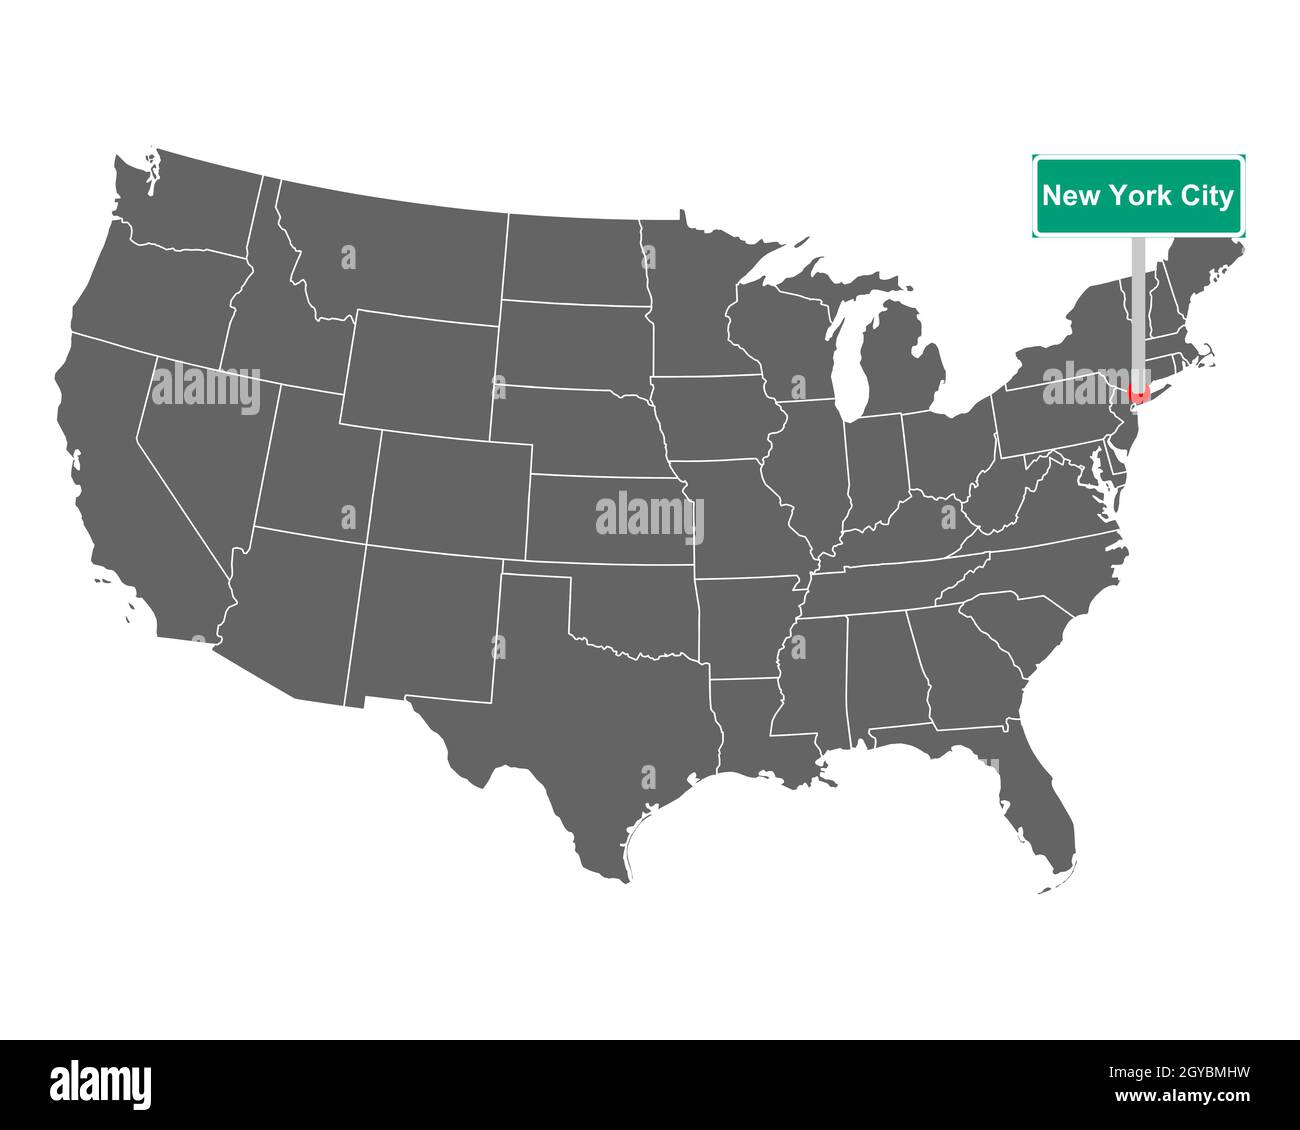 Landkarte der USA mit Orstsschild New York City Stock Photo